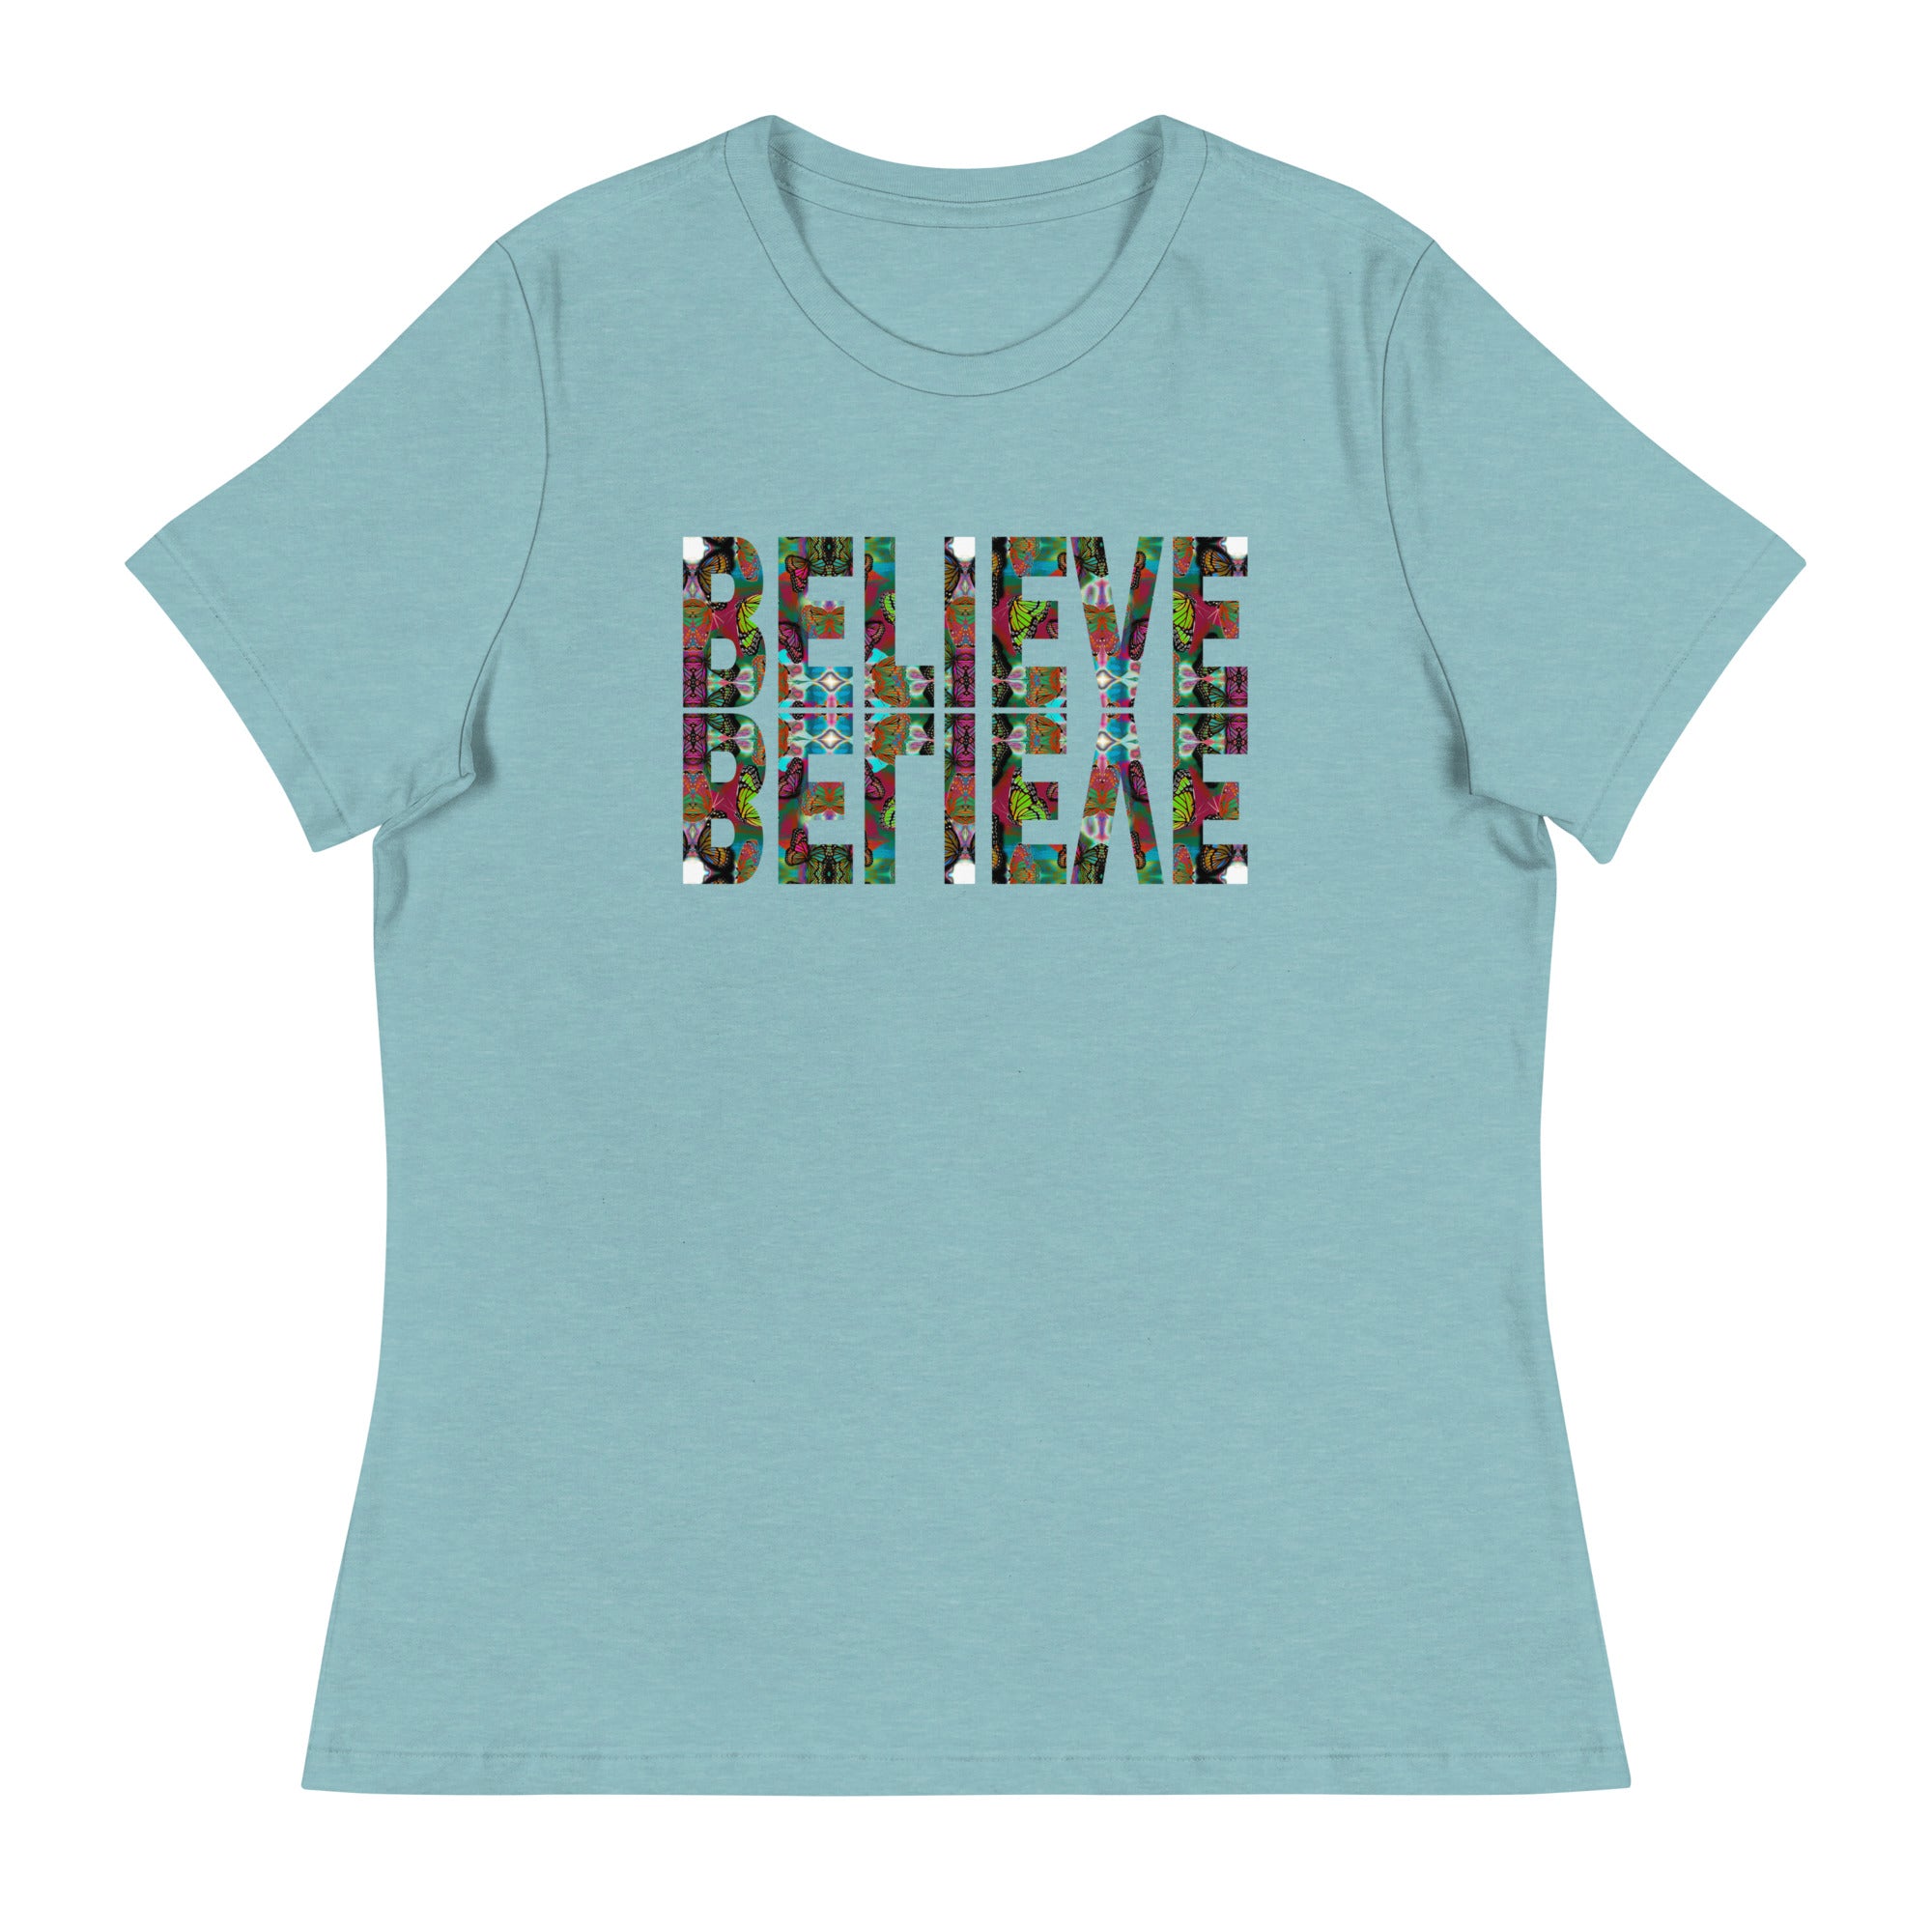 BELIEVE ~ Women's Graphic T-Shirt, Butterfly Word Art Short Sleeve Top